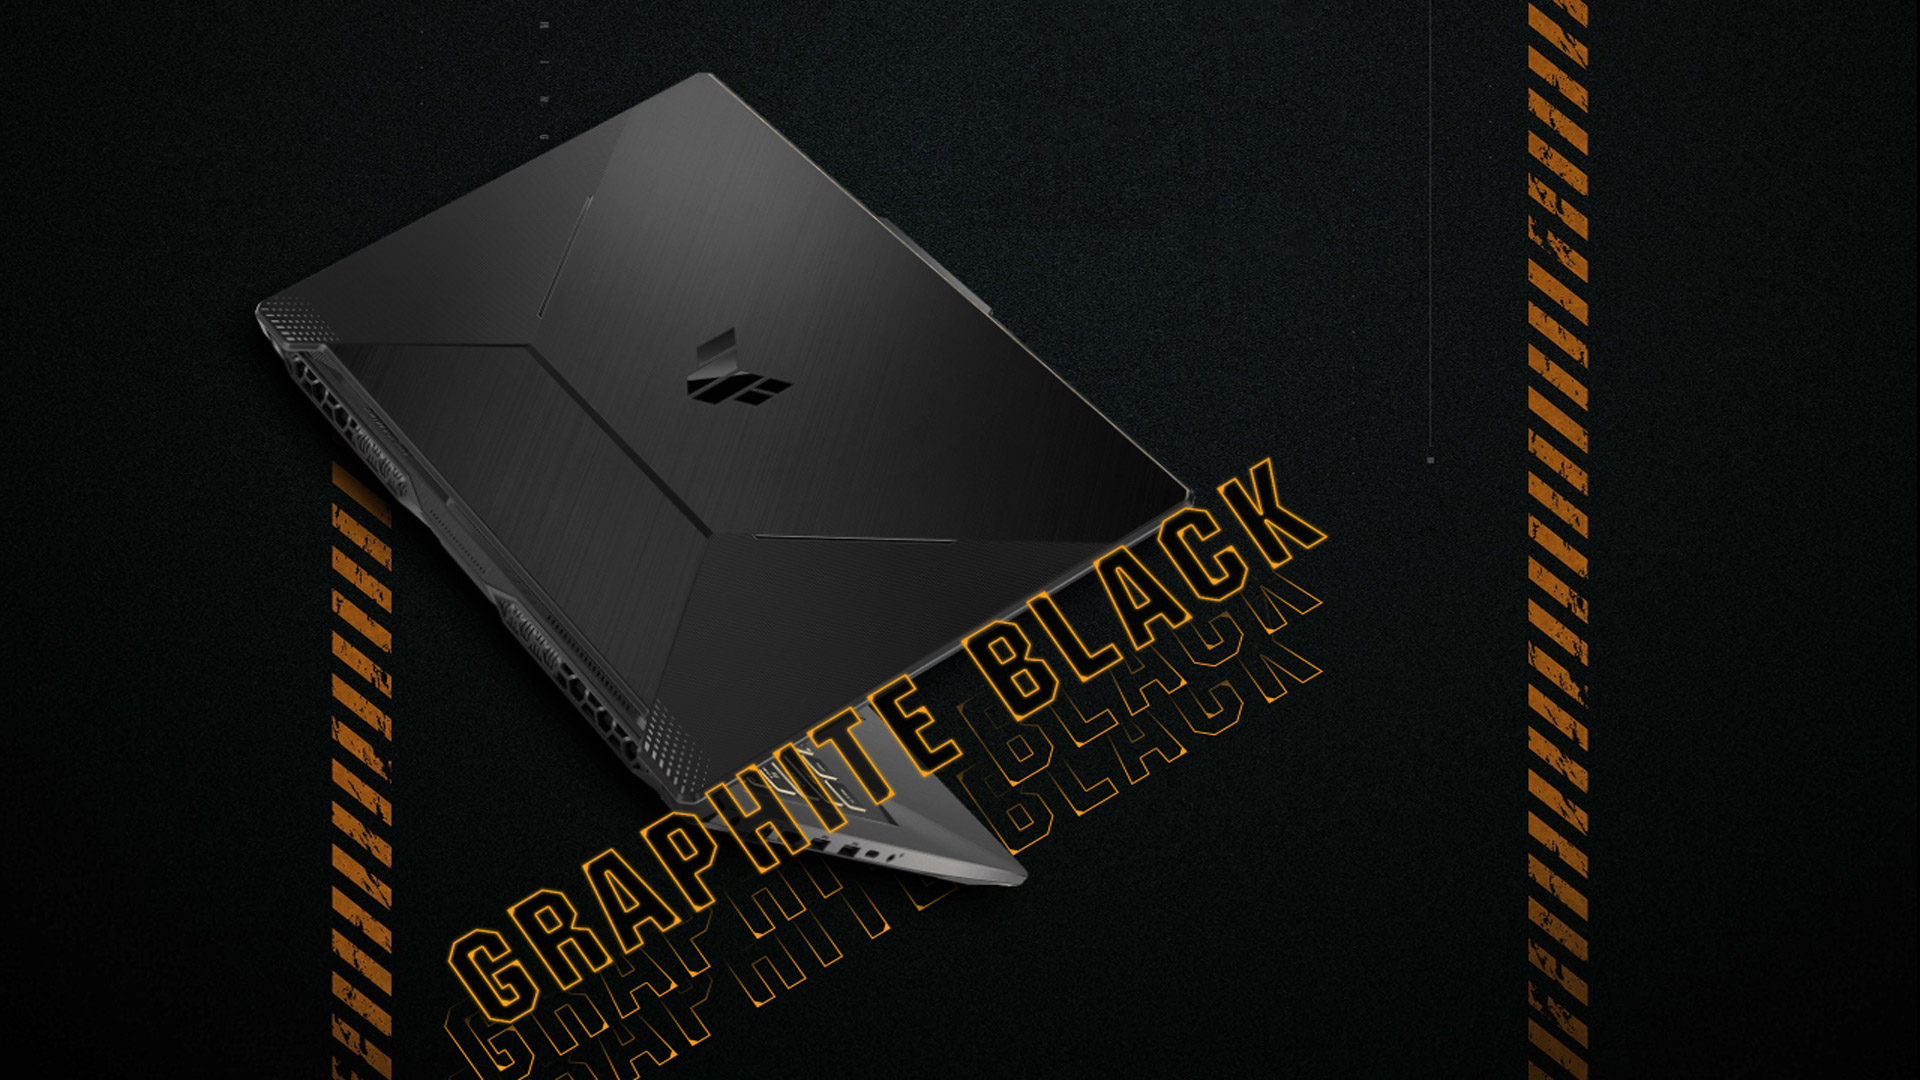 txt-ASUS-TUF-graphite-black